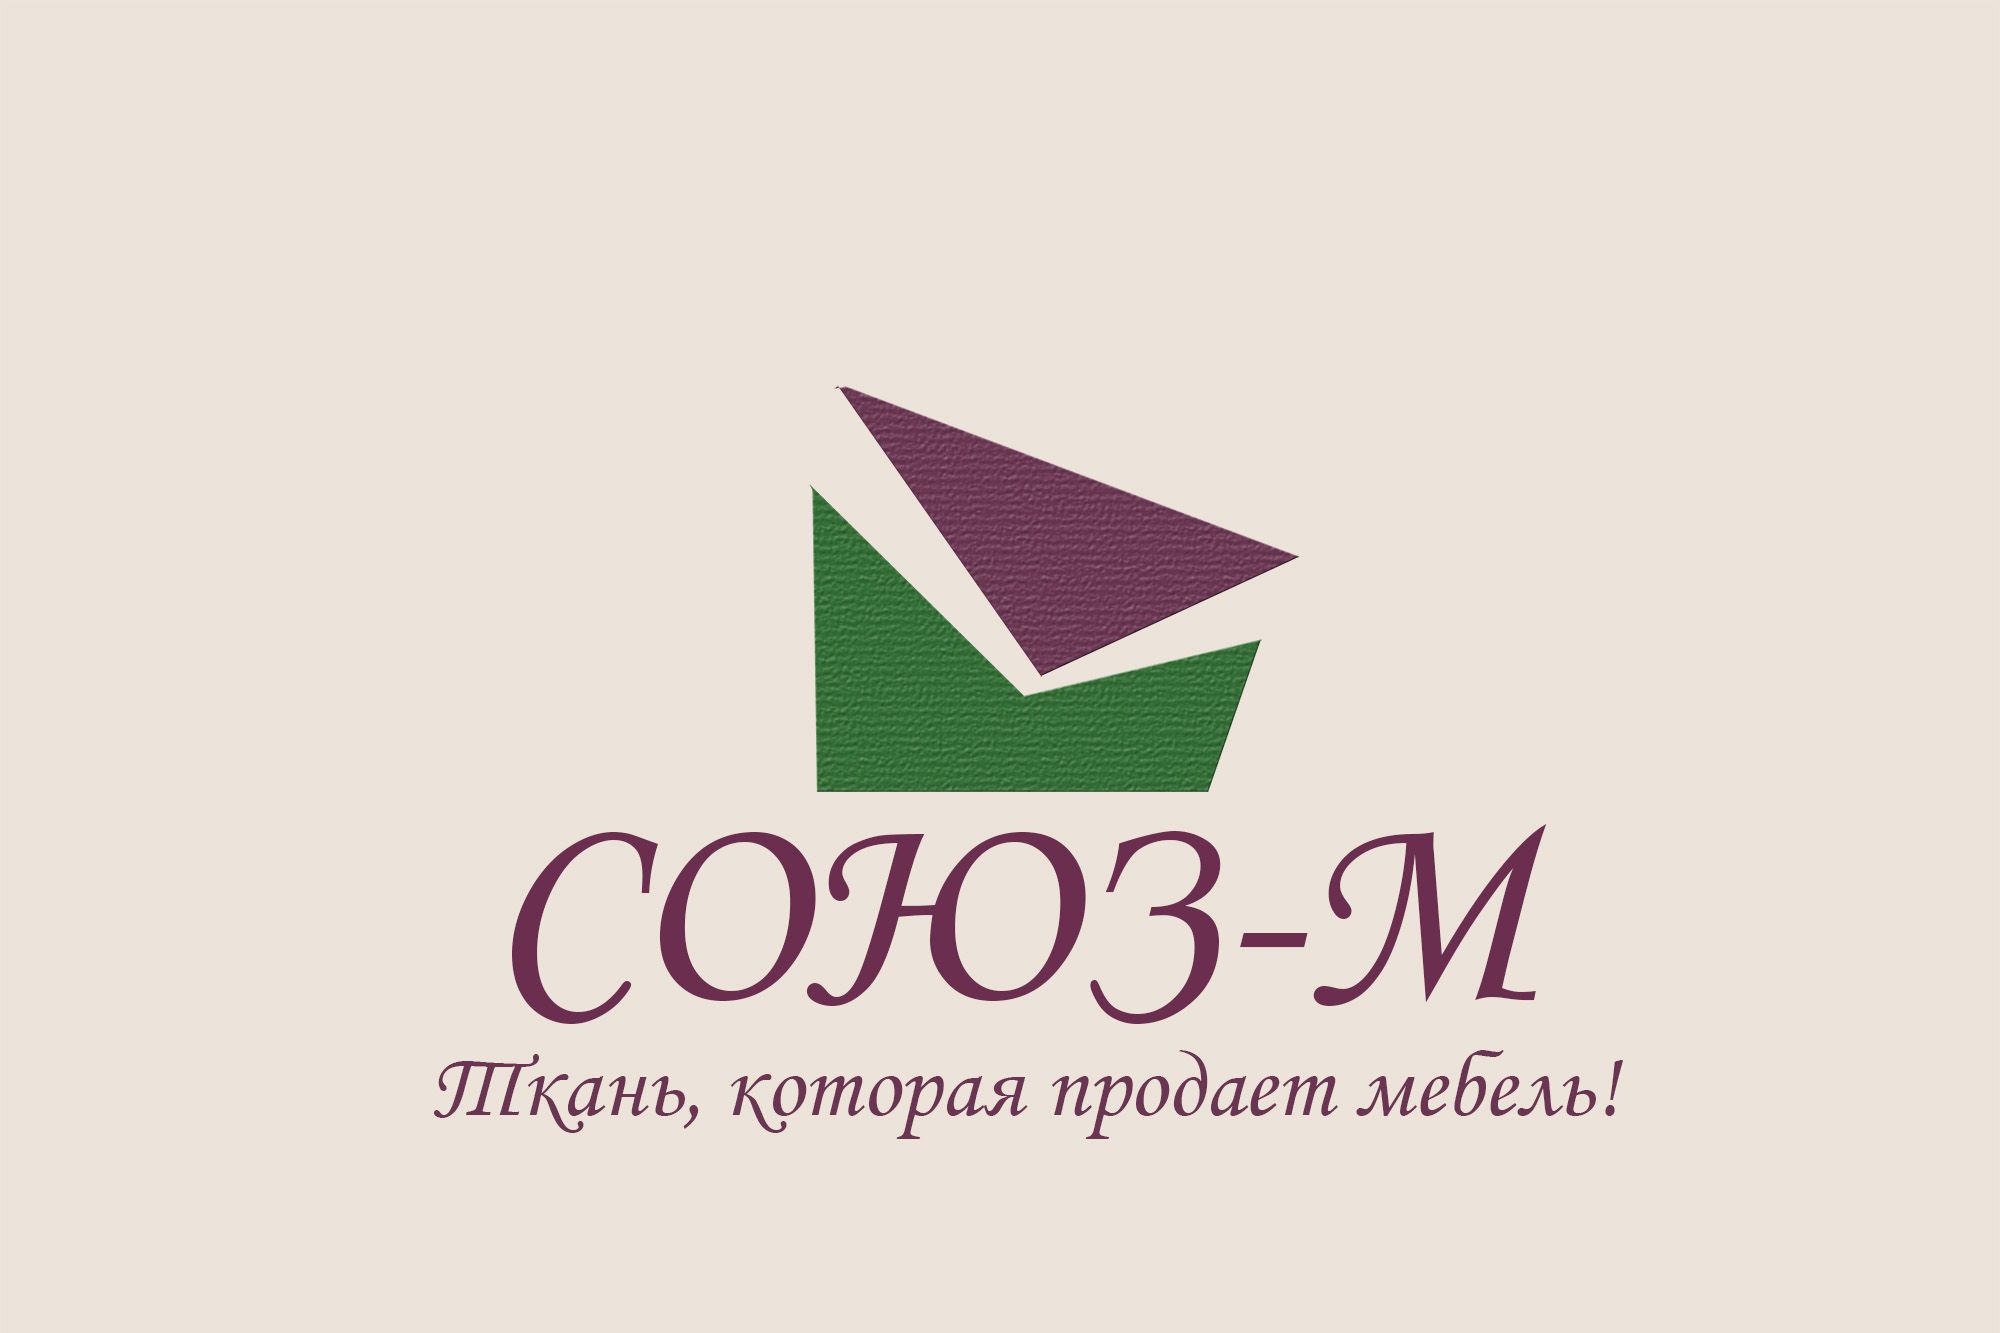 Логотип для компании мебельных тканей (ребрендинг) - дизайнер MShil